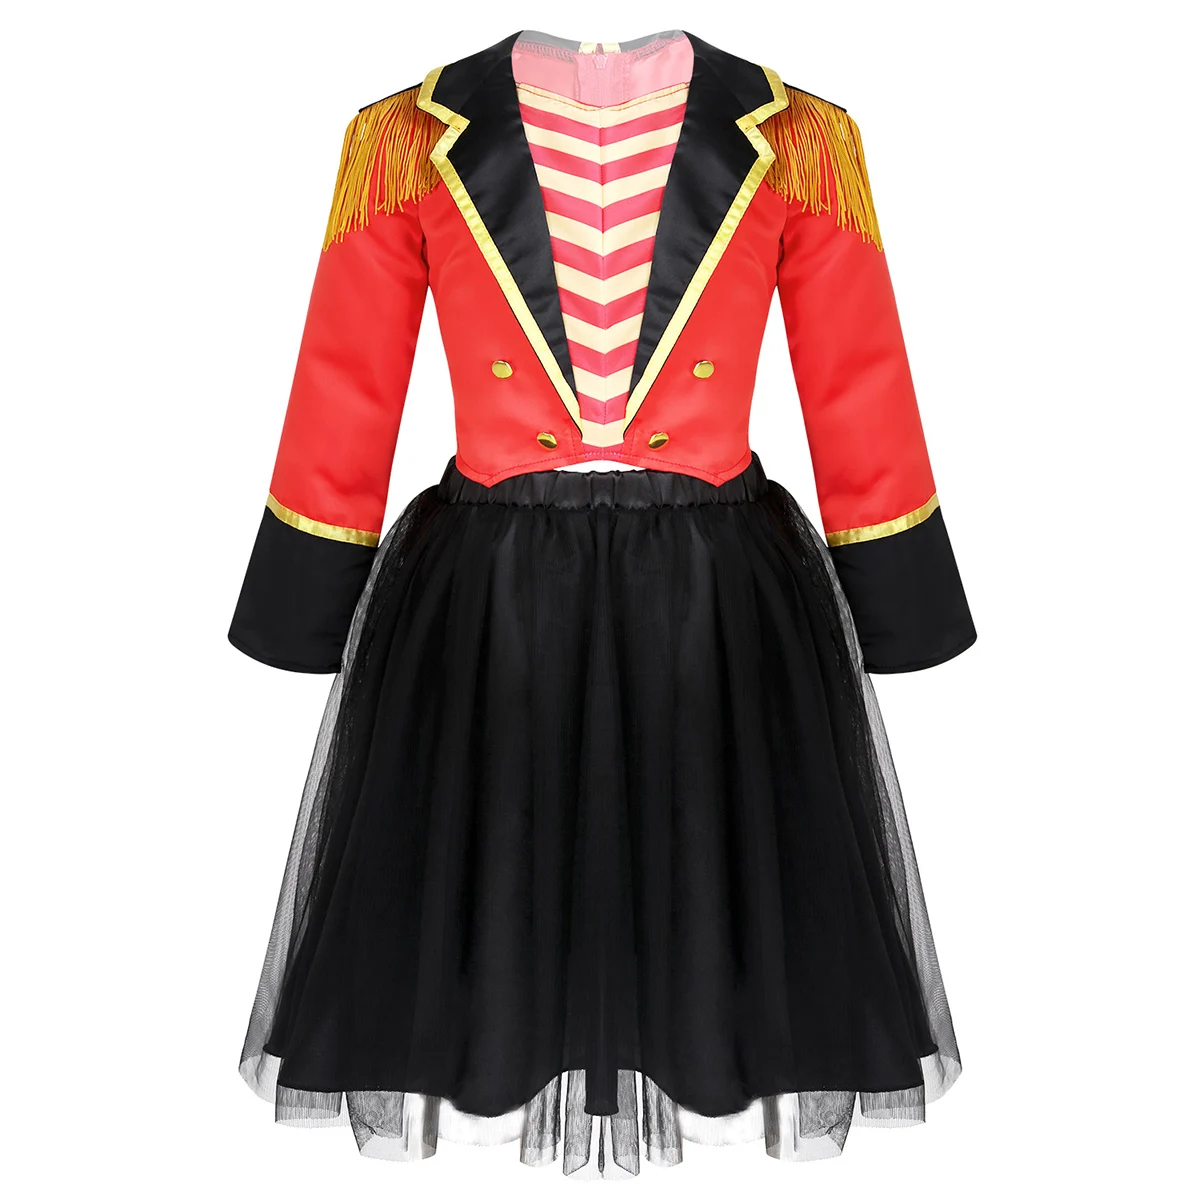 DPOIS/Детский костюм для ролевых игр на Хеллоуин для девочек с изображением цирка рингмейстера детские нарядные вечерние костюмы с юбкой-пачкой - Цвет: Red